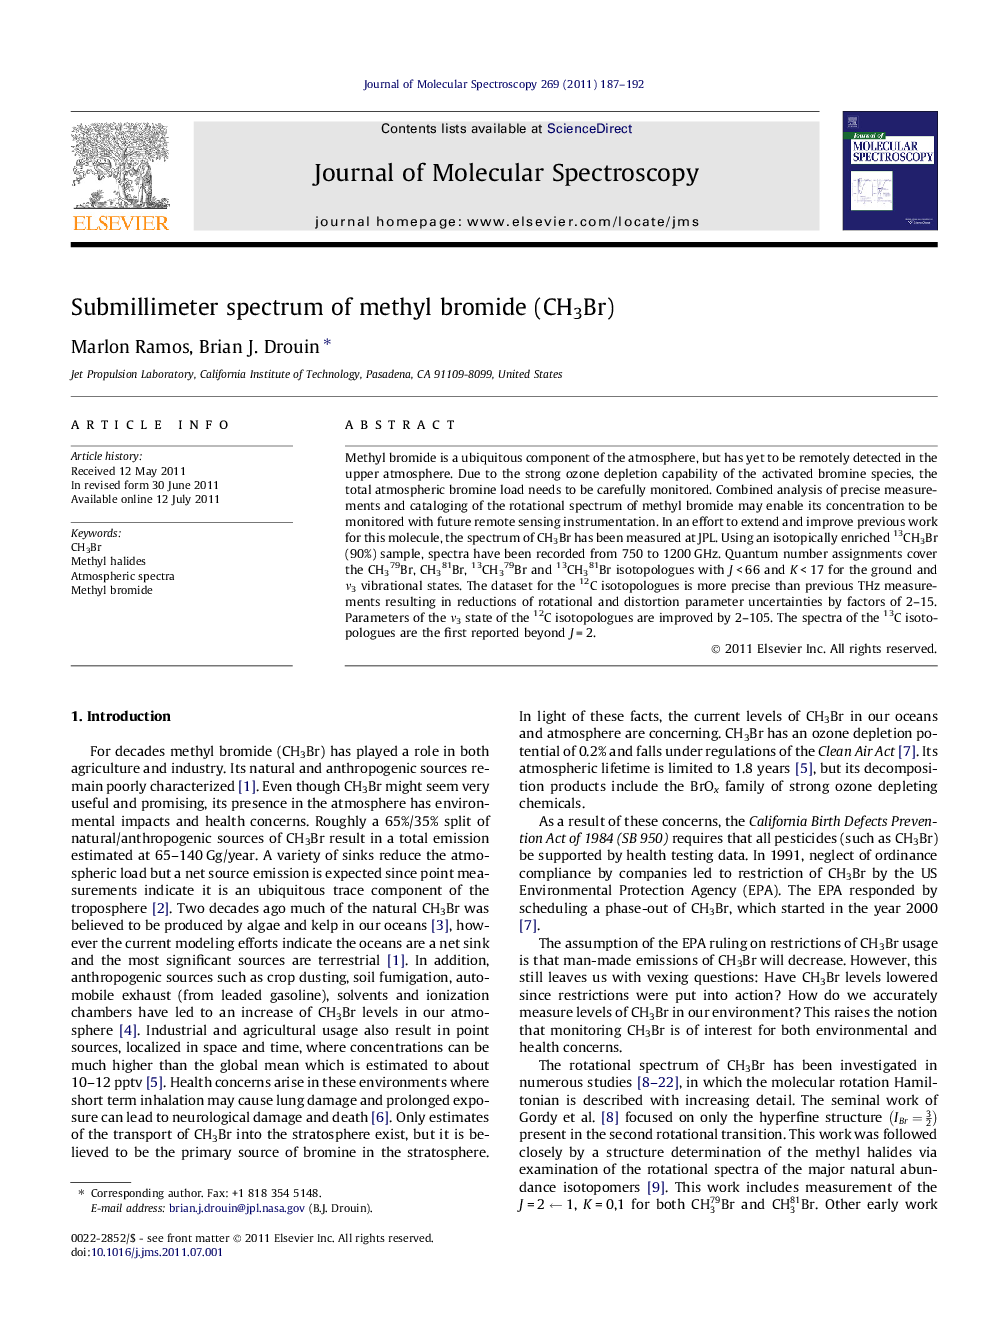 Submillimeter spectrum of methyl bromide (CH3Br)